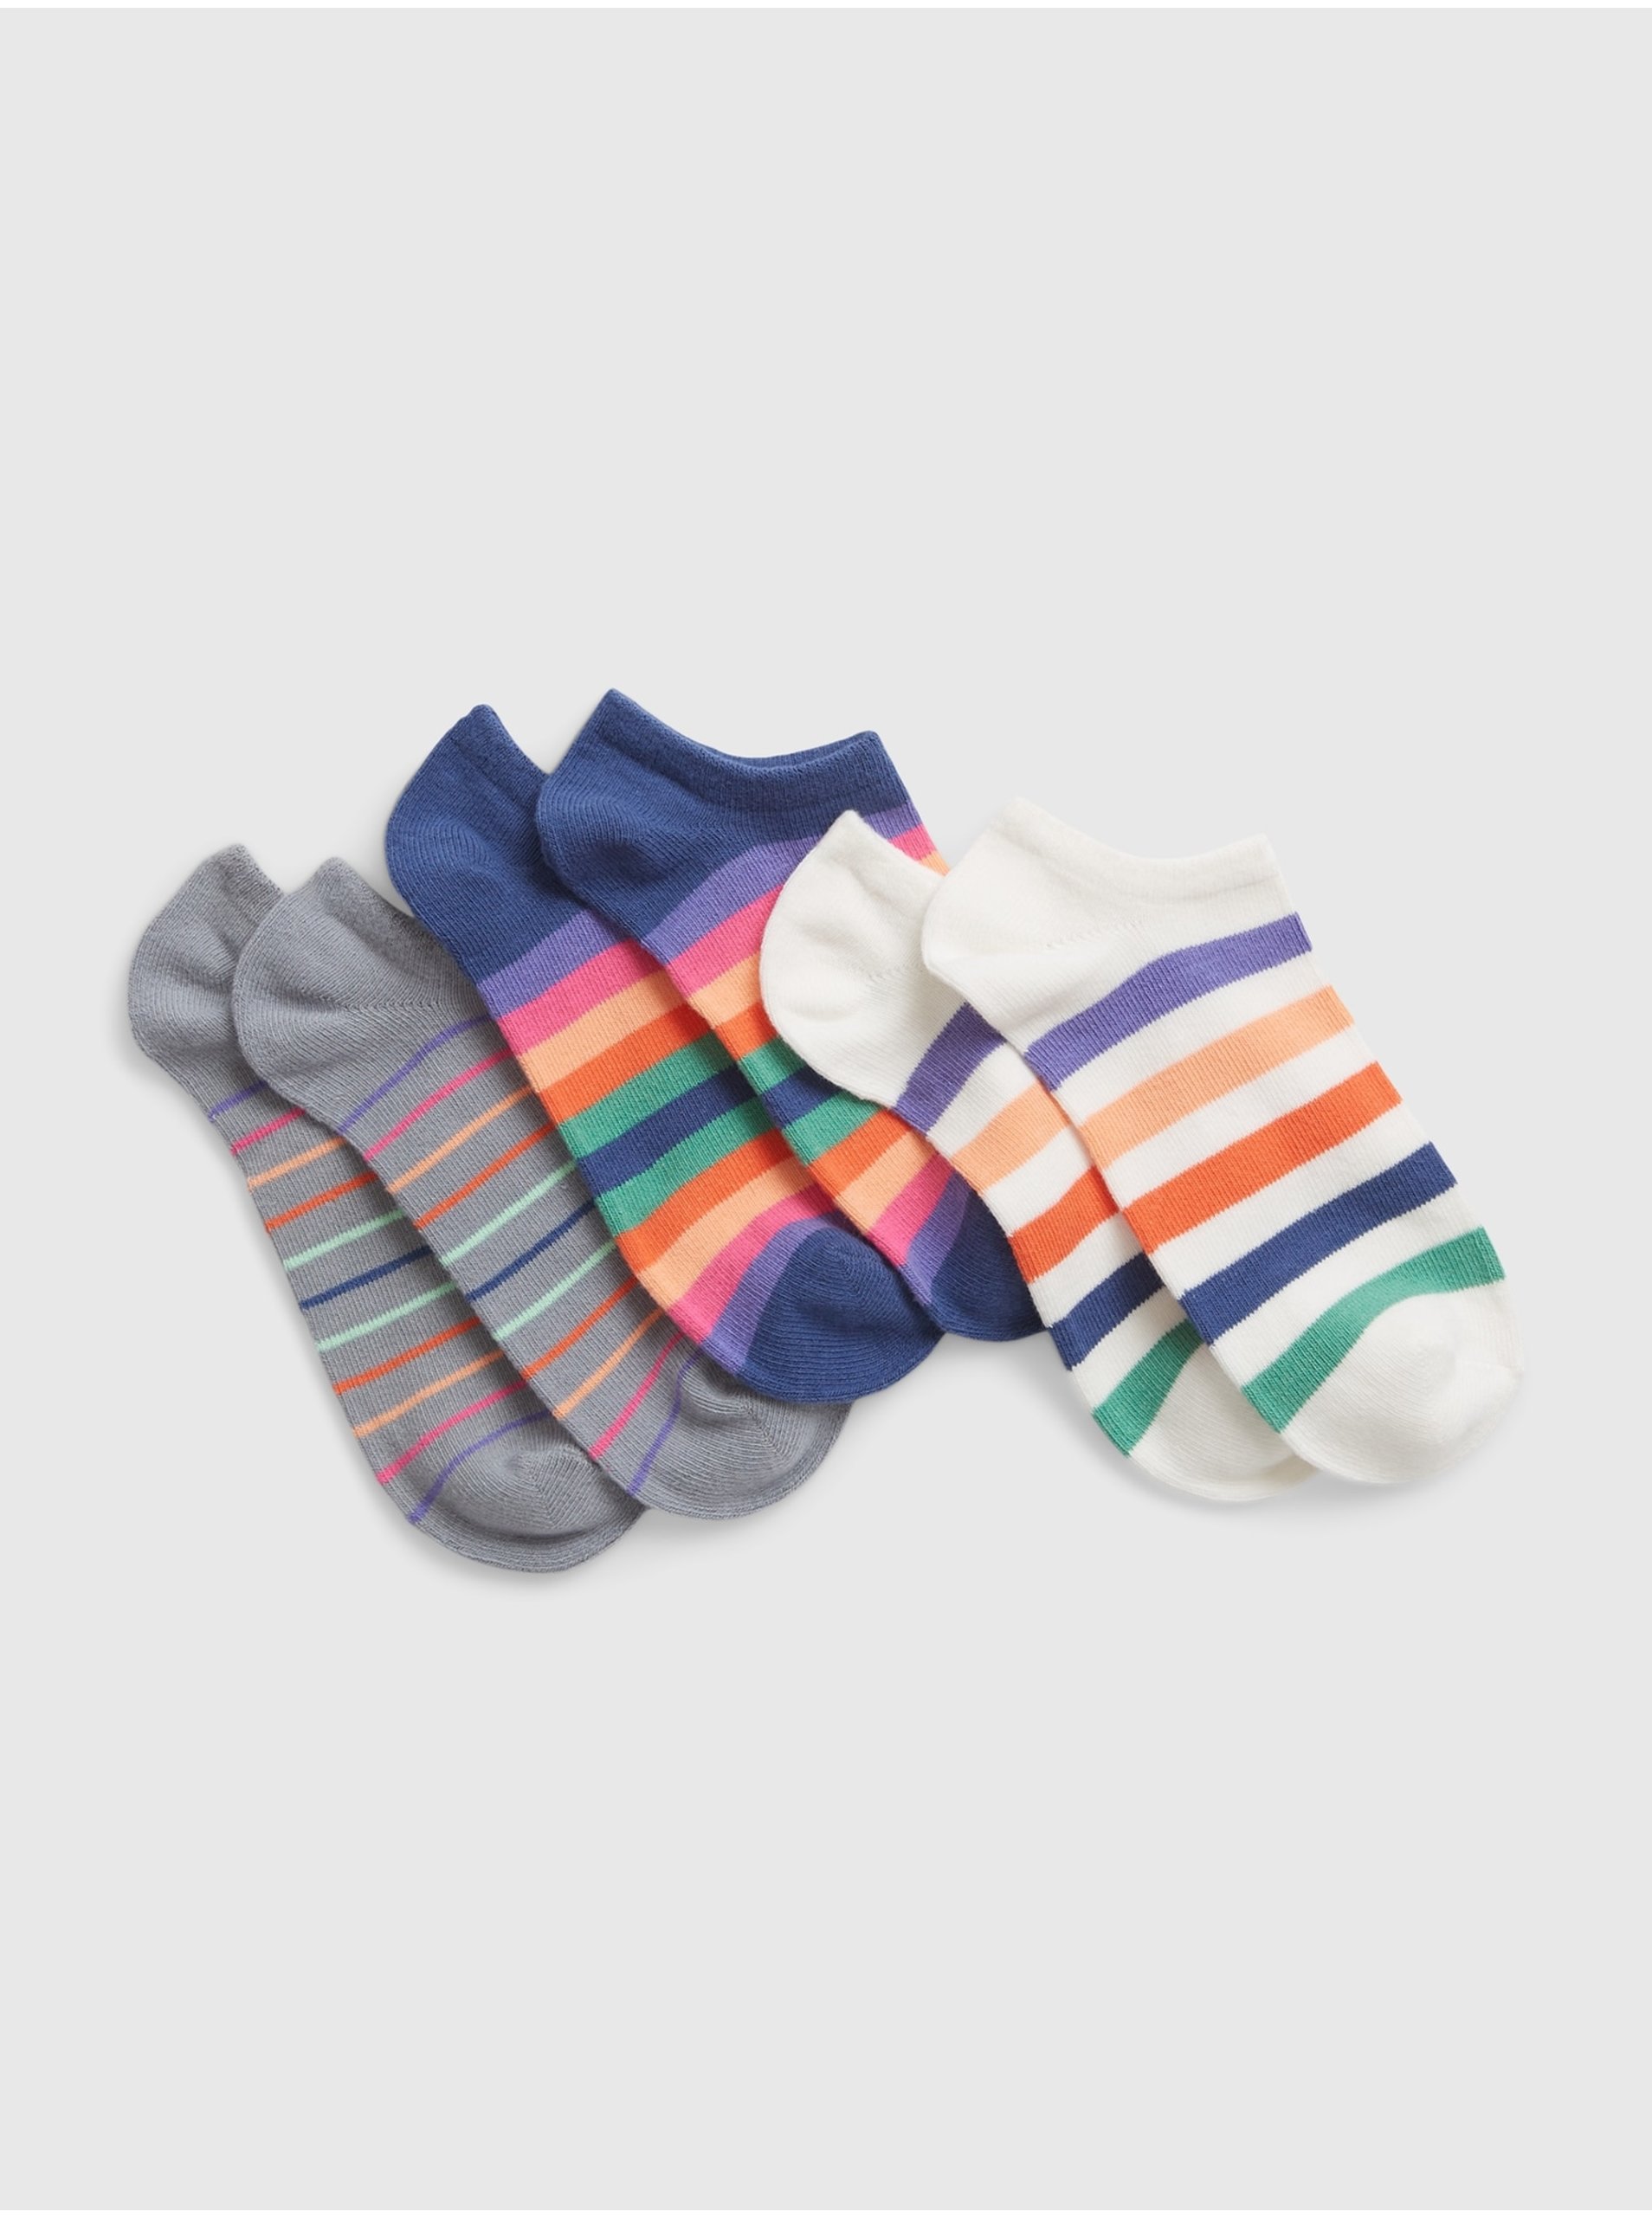 Lacno Súprava troch párov detských pruhovaných ponožiek v bielej, tmavo modrej a šedej farbe GAP